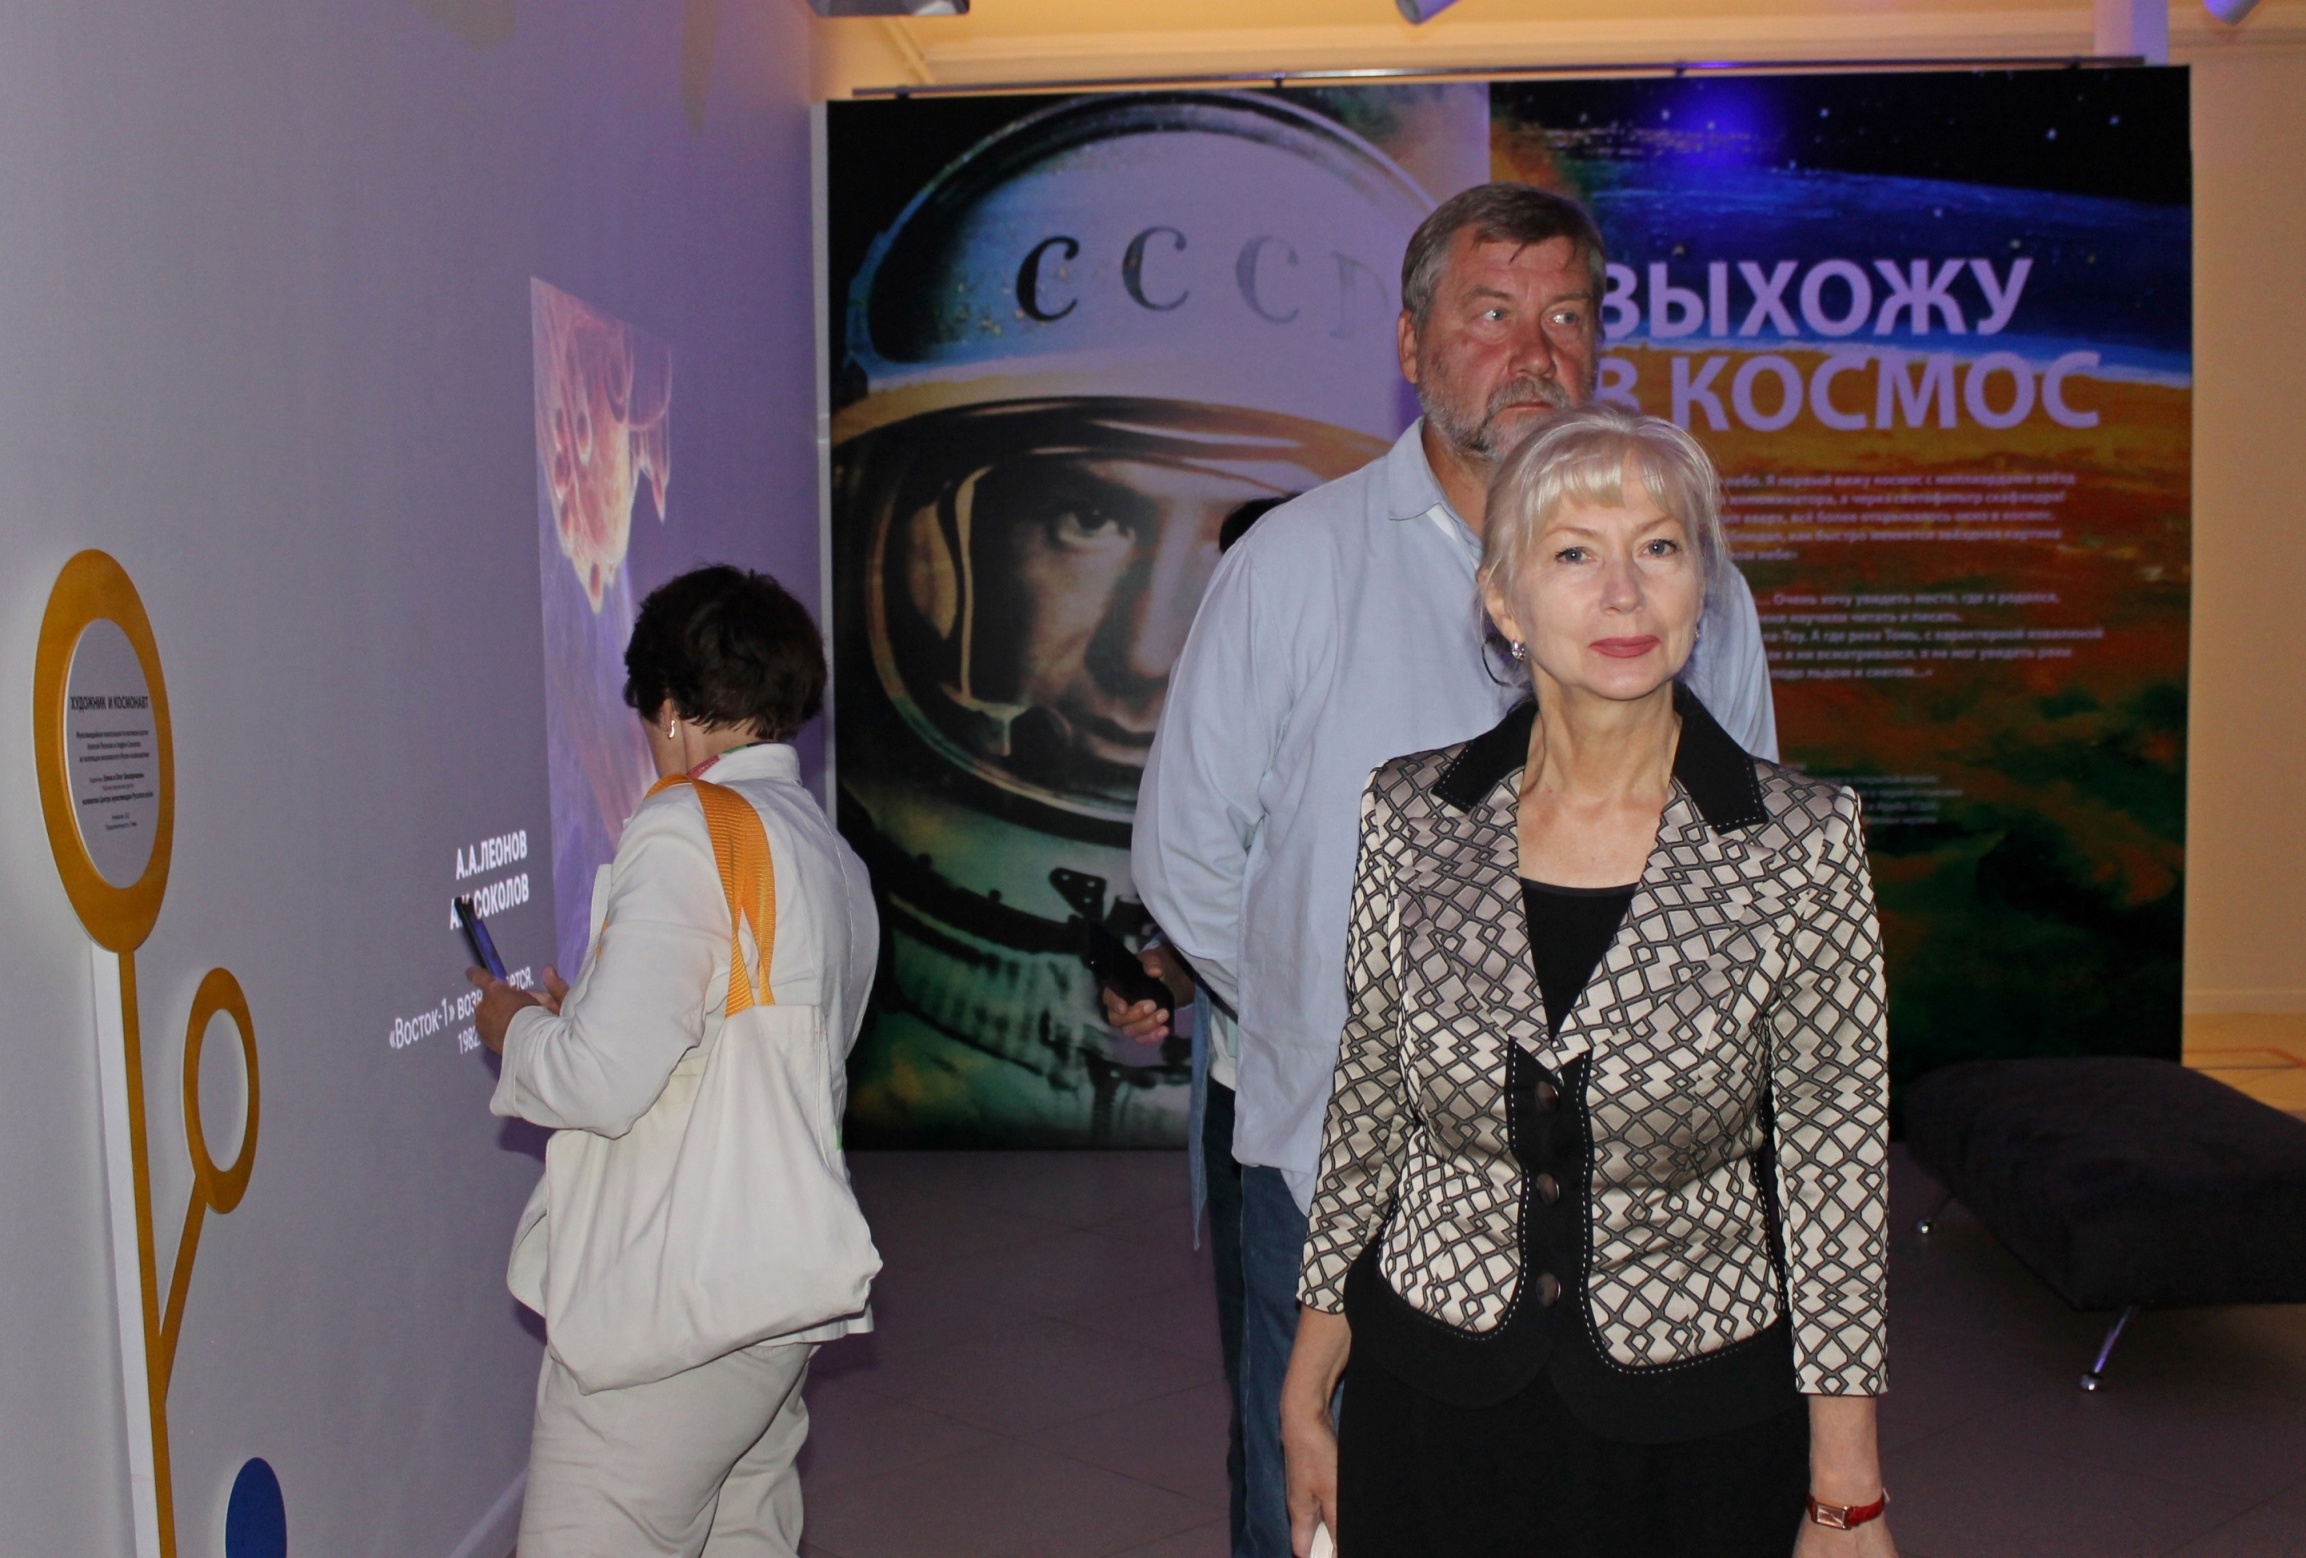 Начальник службы «Виртуальный Русский музей» Мария Гладких провела экскурсию по выставке «Посвящение космонавтике» для участников проекта «Музейные маршруты России»